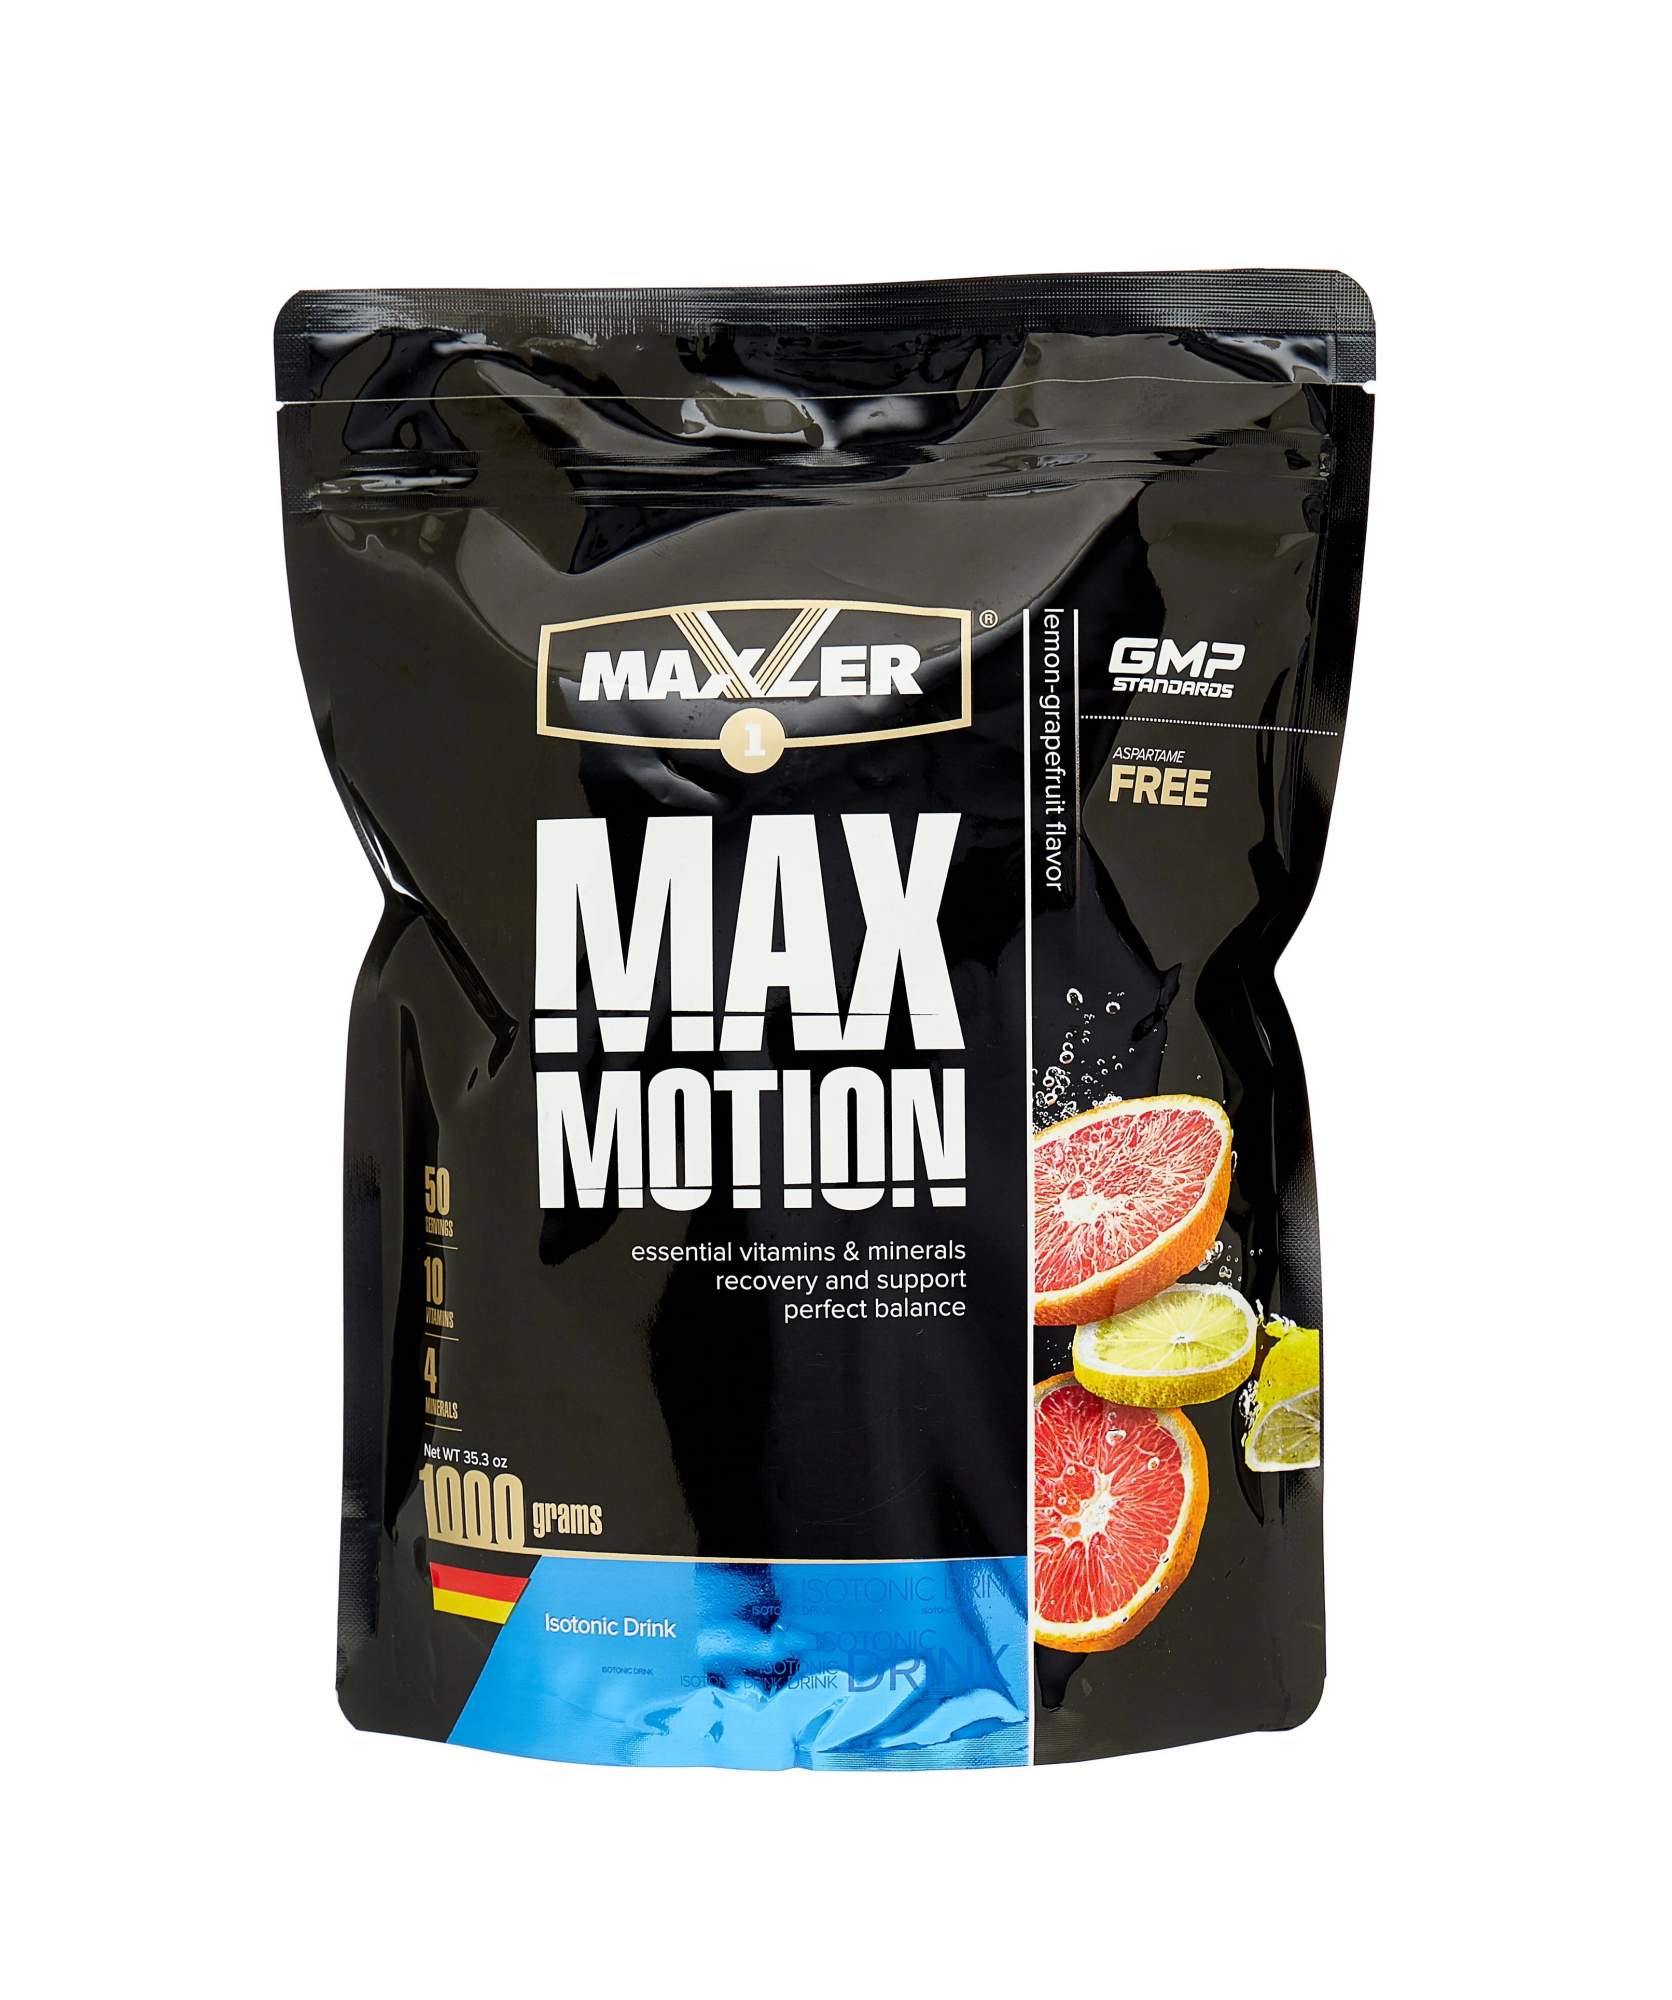 Изотоник Maxler Max Motion, 1000 г, lemon-grapefruit